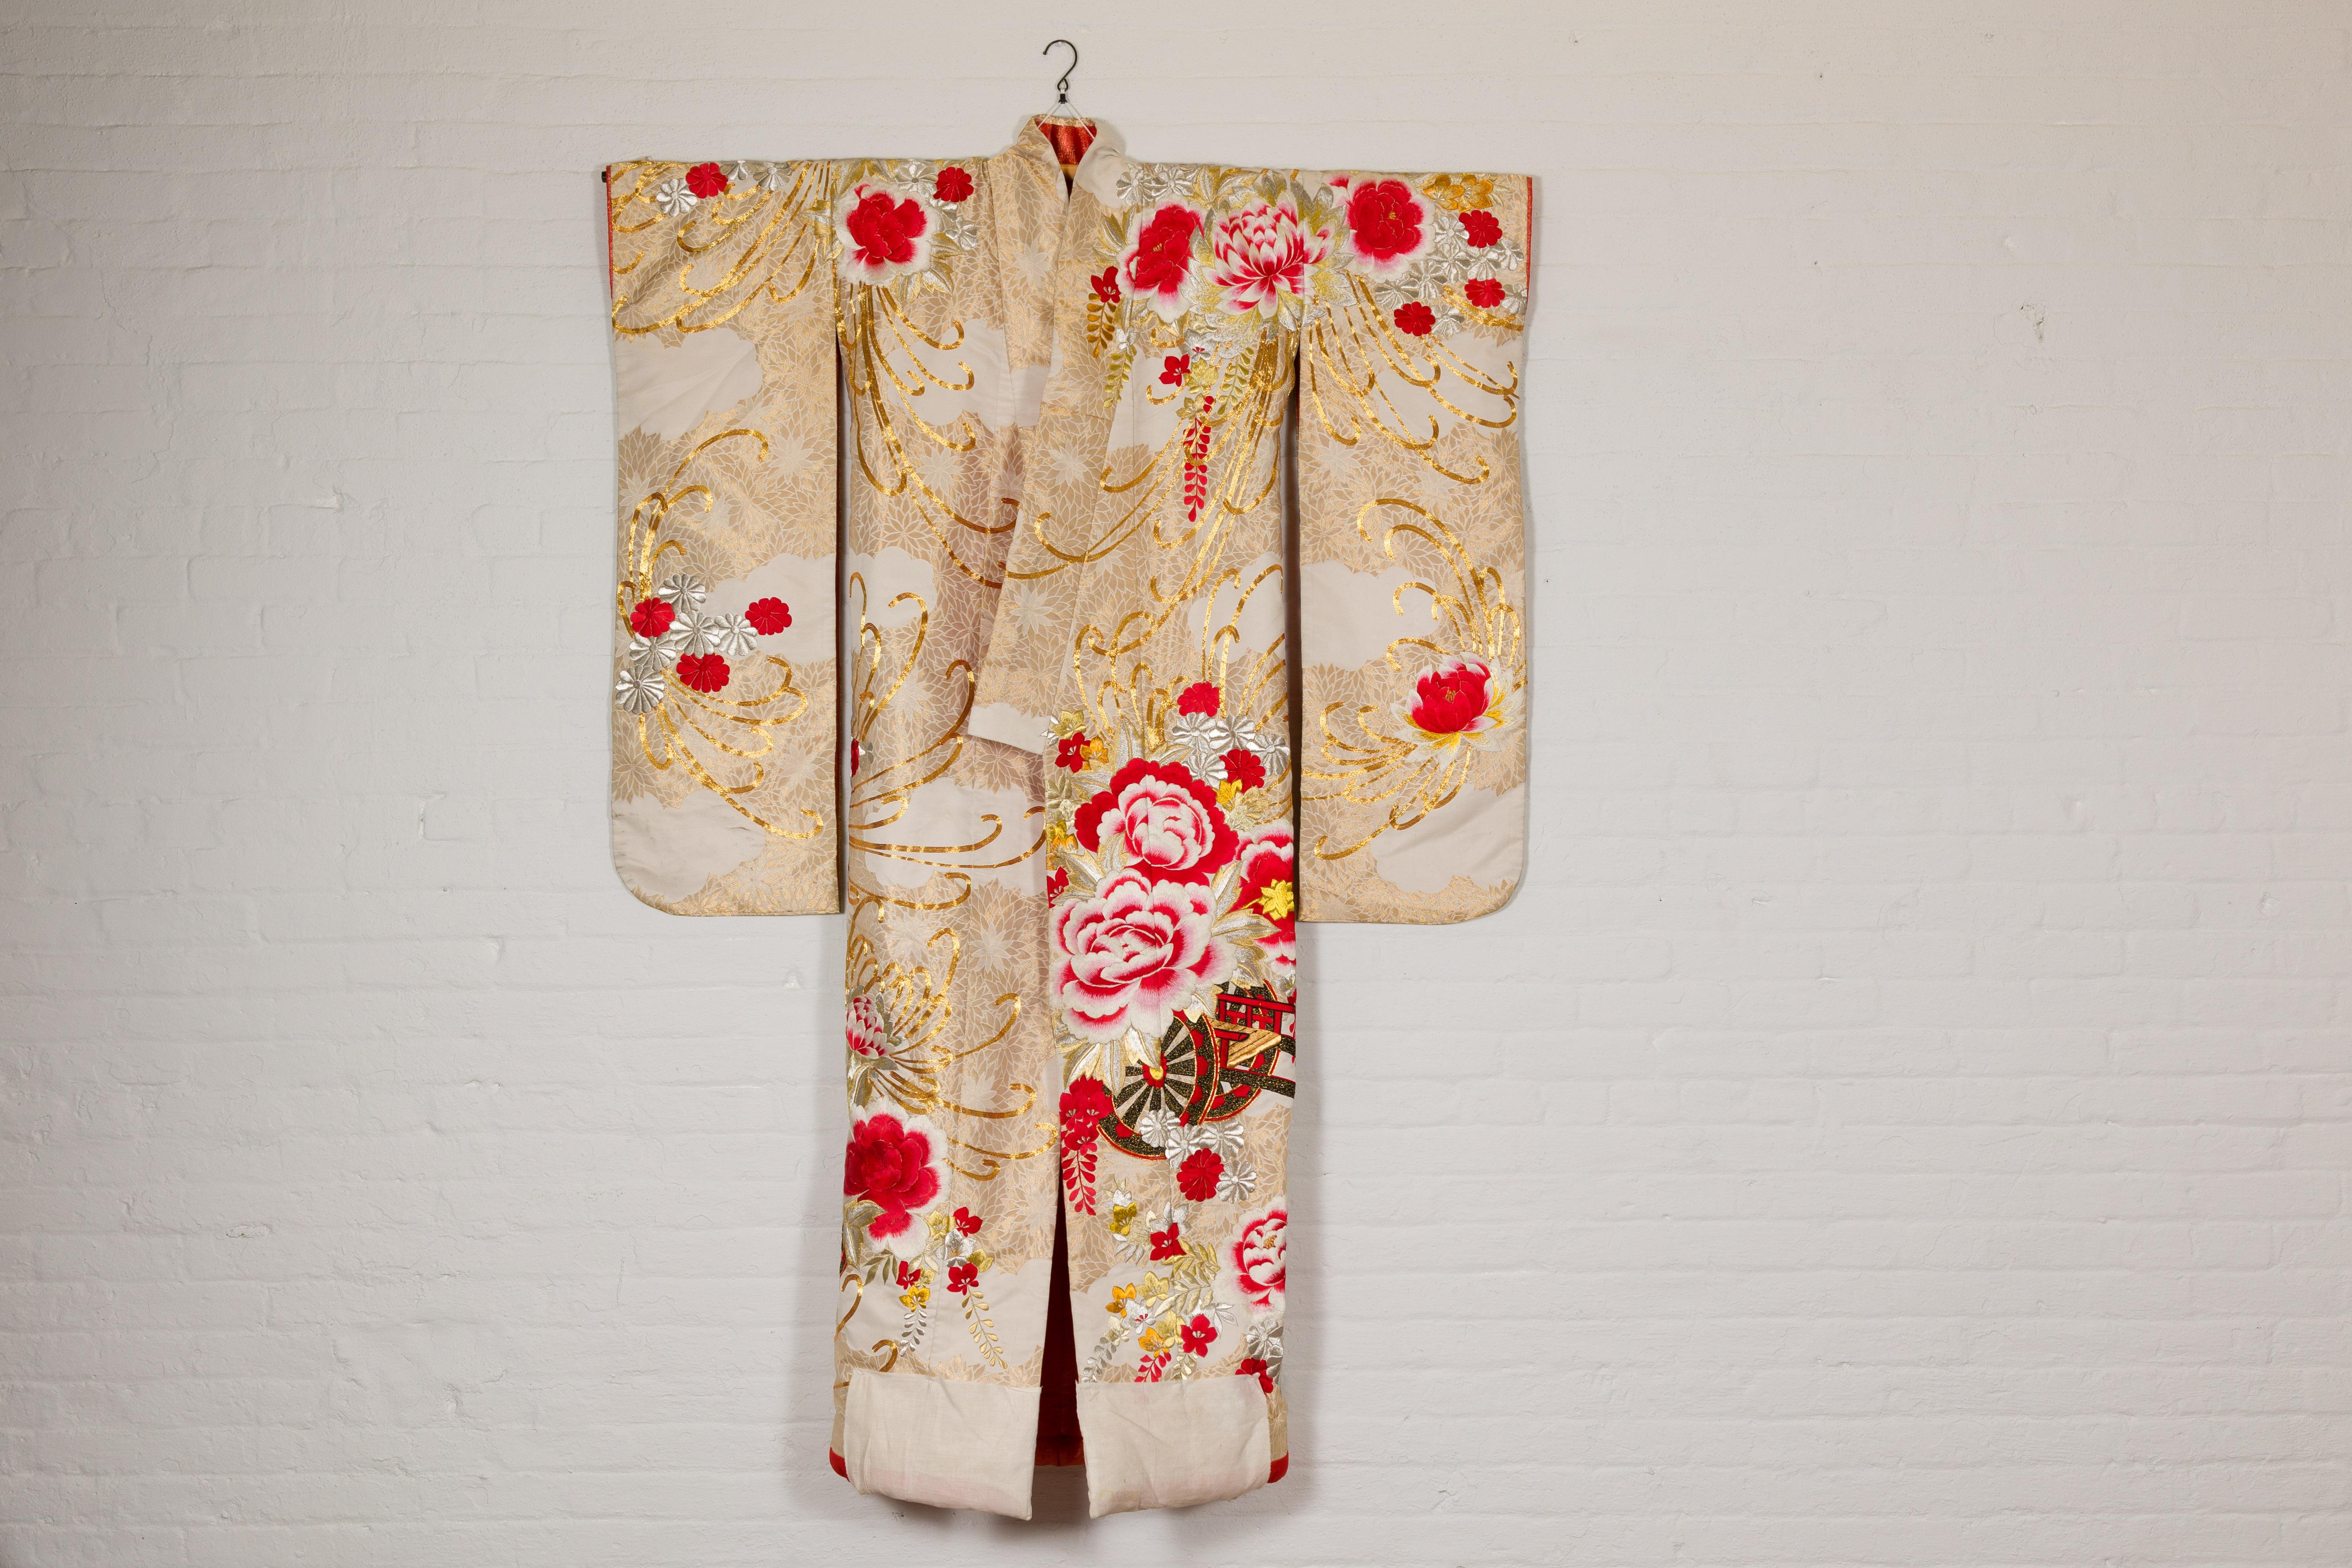 Kimono de mariage pour femme en brocart de soie, datant de l'ère Showa, circa 1940, avec des détails brodés à la main représentant de grandes fleurs et un chariot. Imprégné d'opulence culturelle, ce kimono de mariage pour femme de l'ère Showa (vers